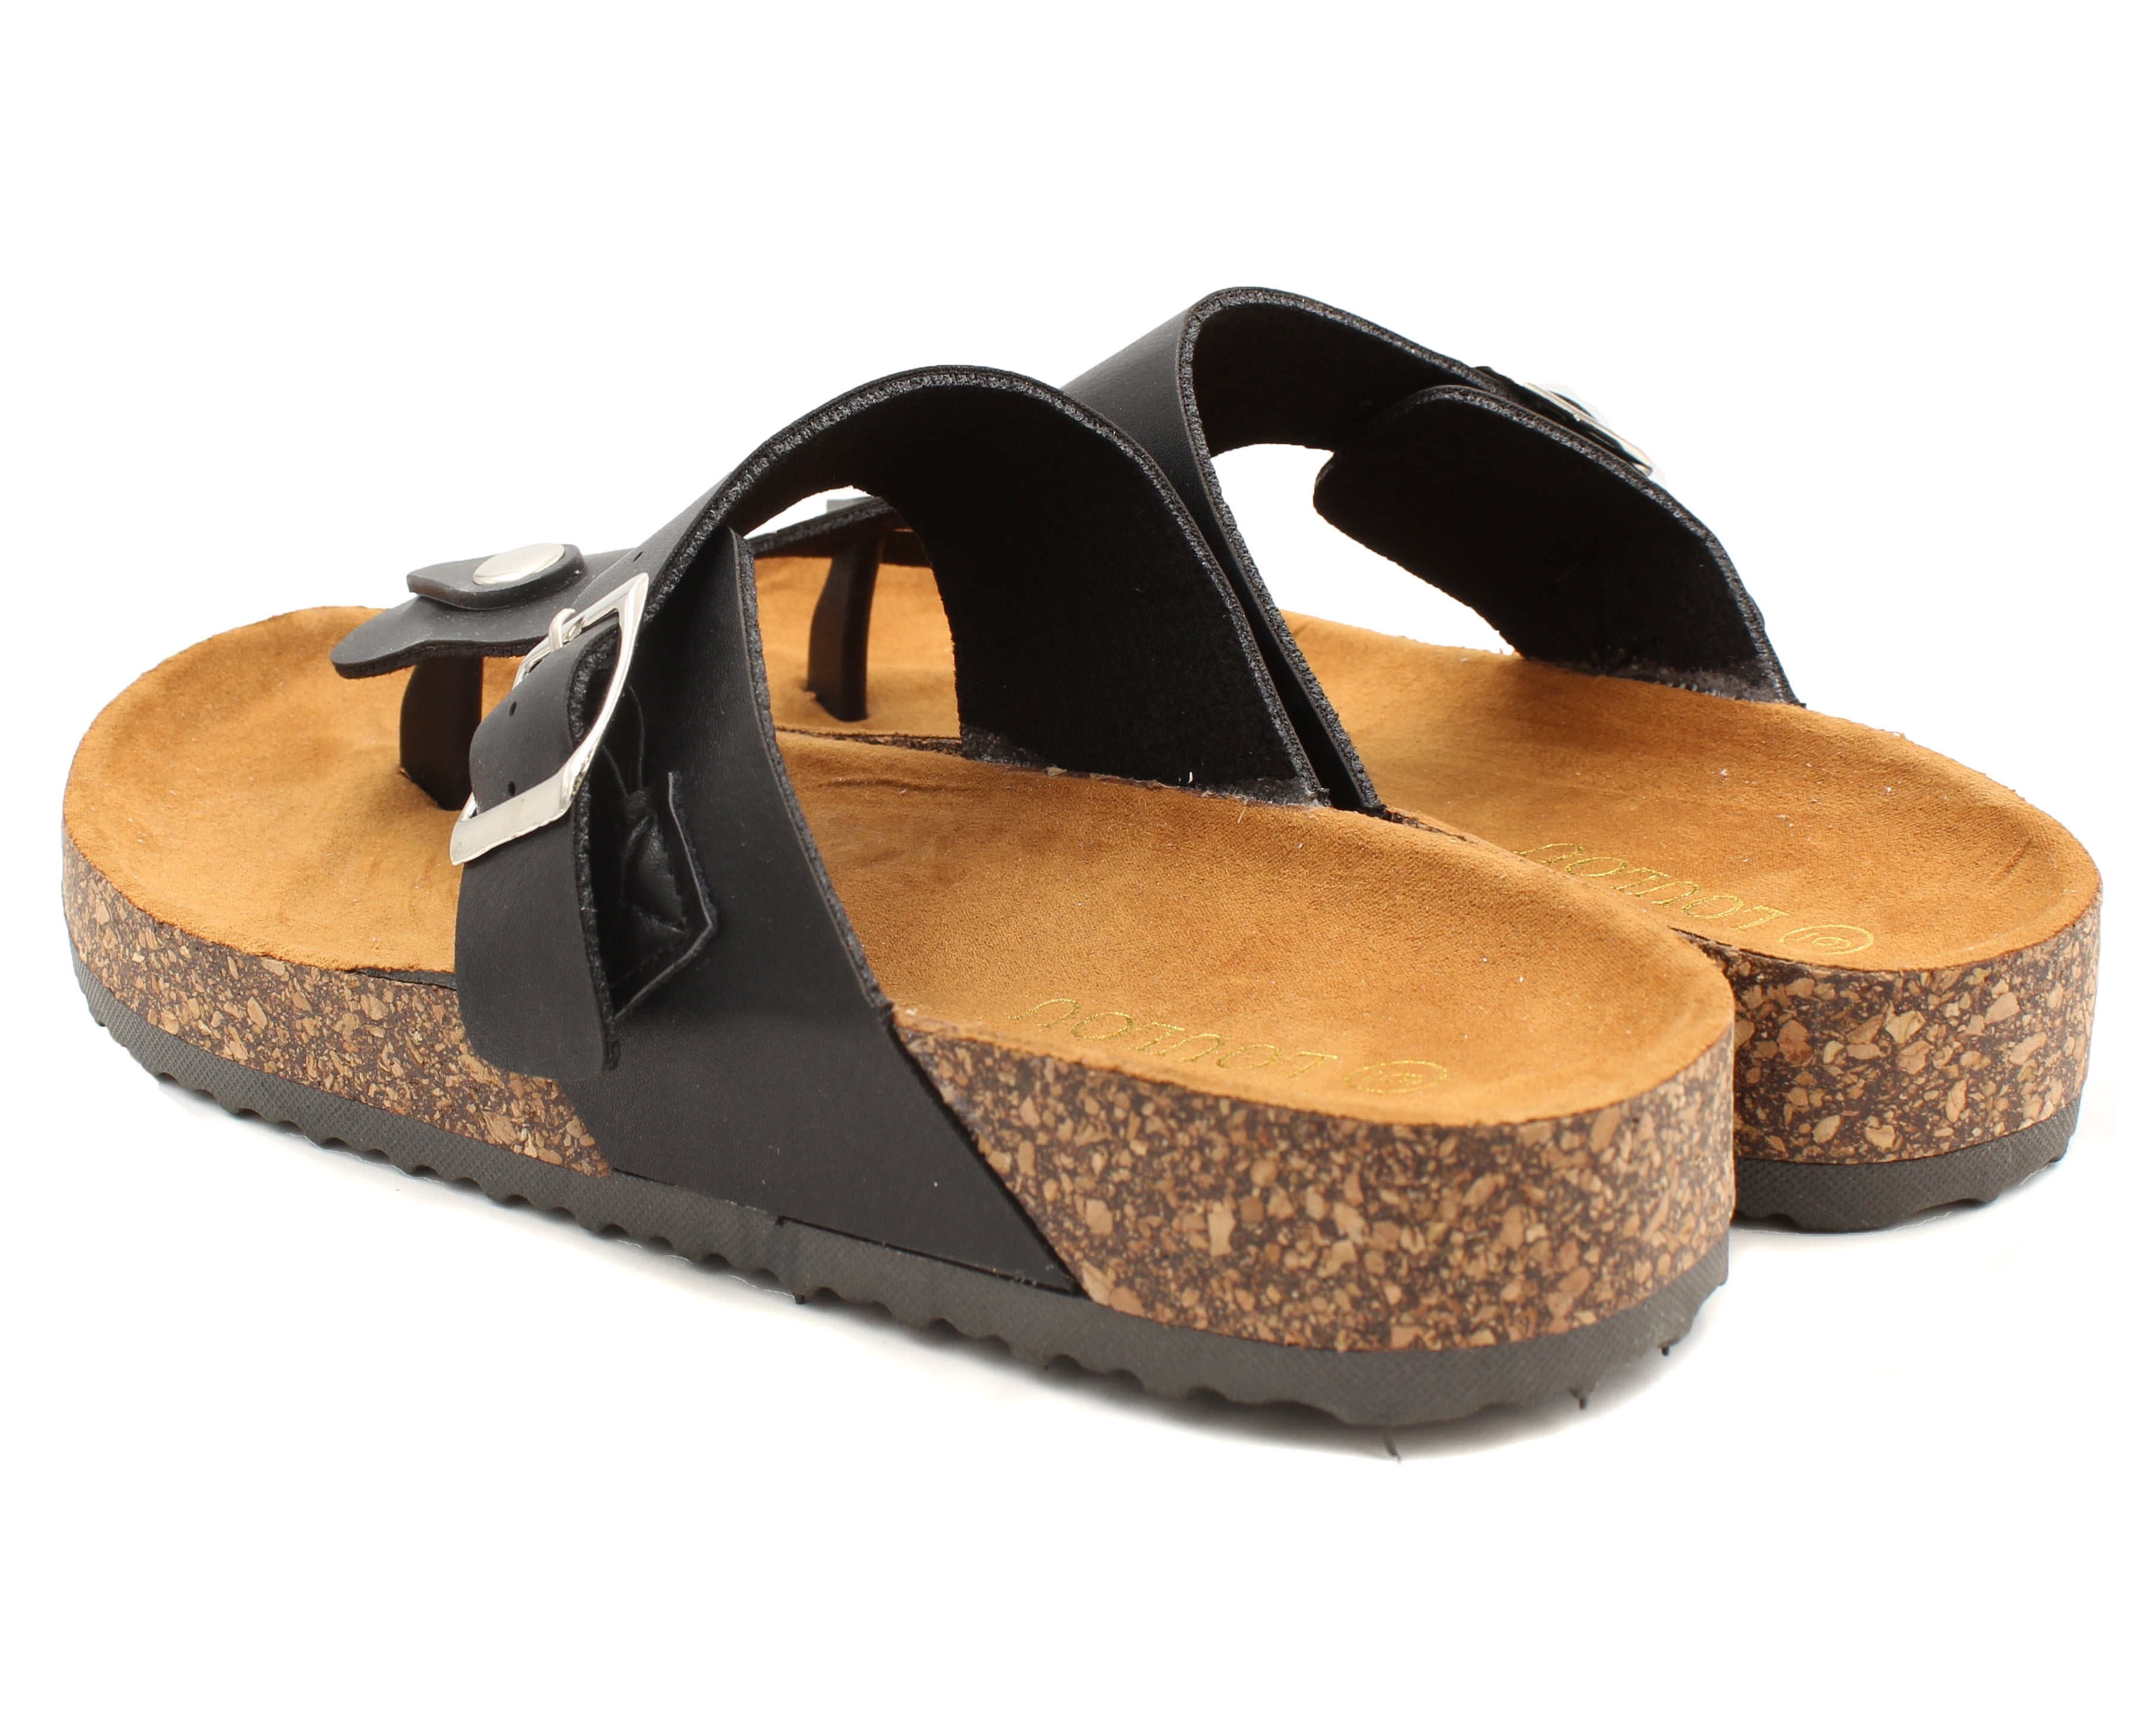 cork bottom platform sandals